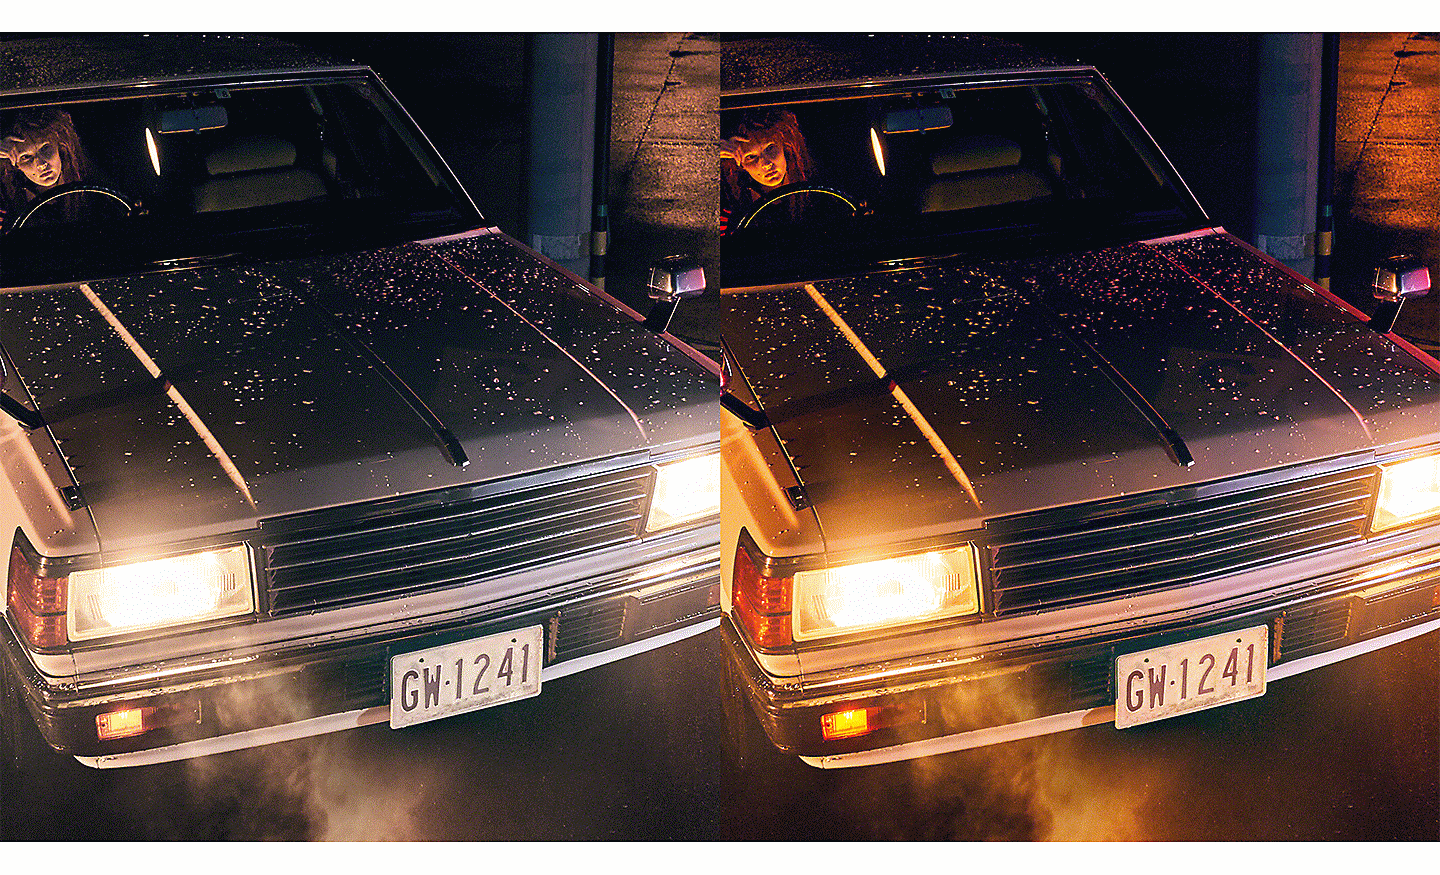 Două imagini ale unei mașini cu farurile aprinse, una cu o gradație mai uniformă a culorilor decât cealaltă.